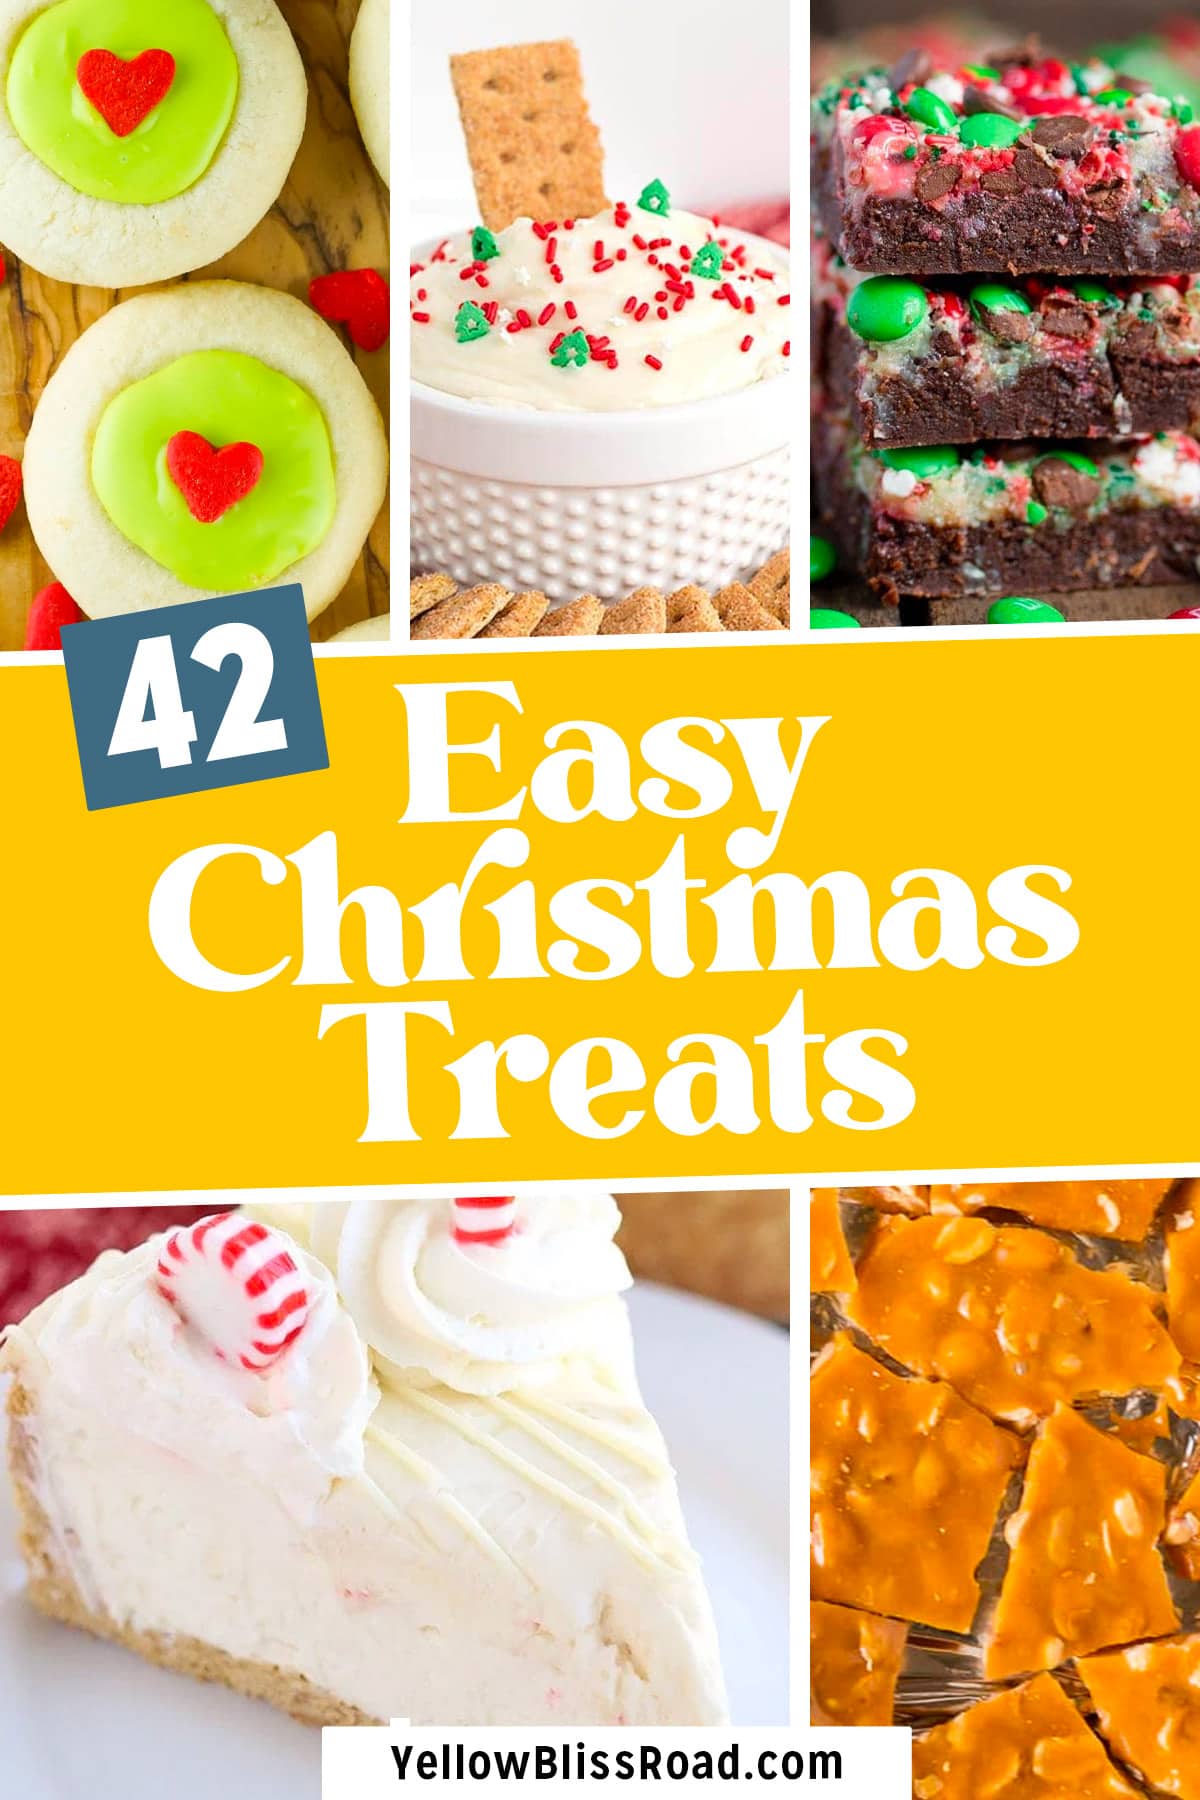 42 Easy Christmas Treats